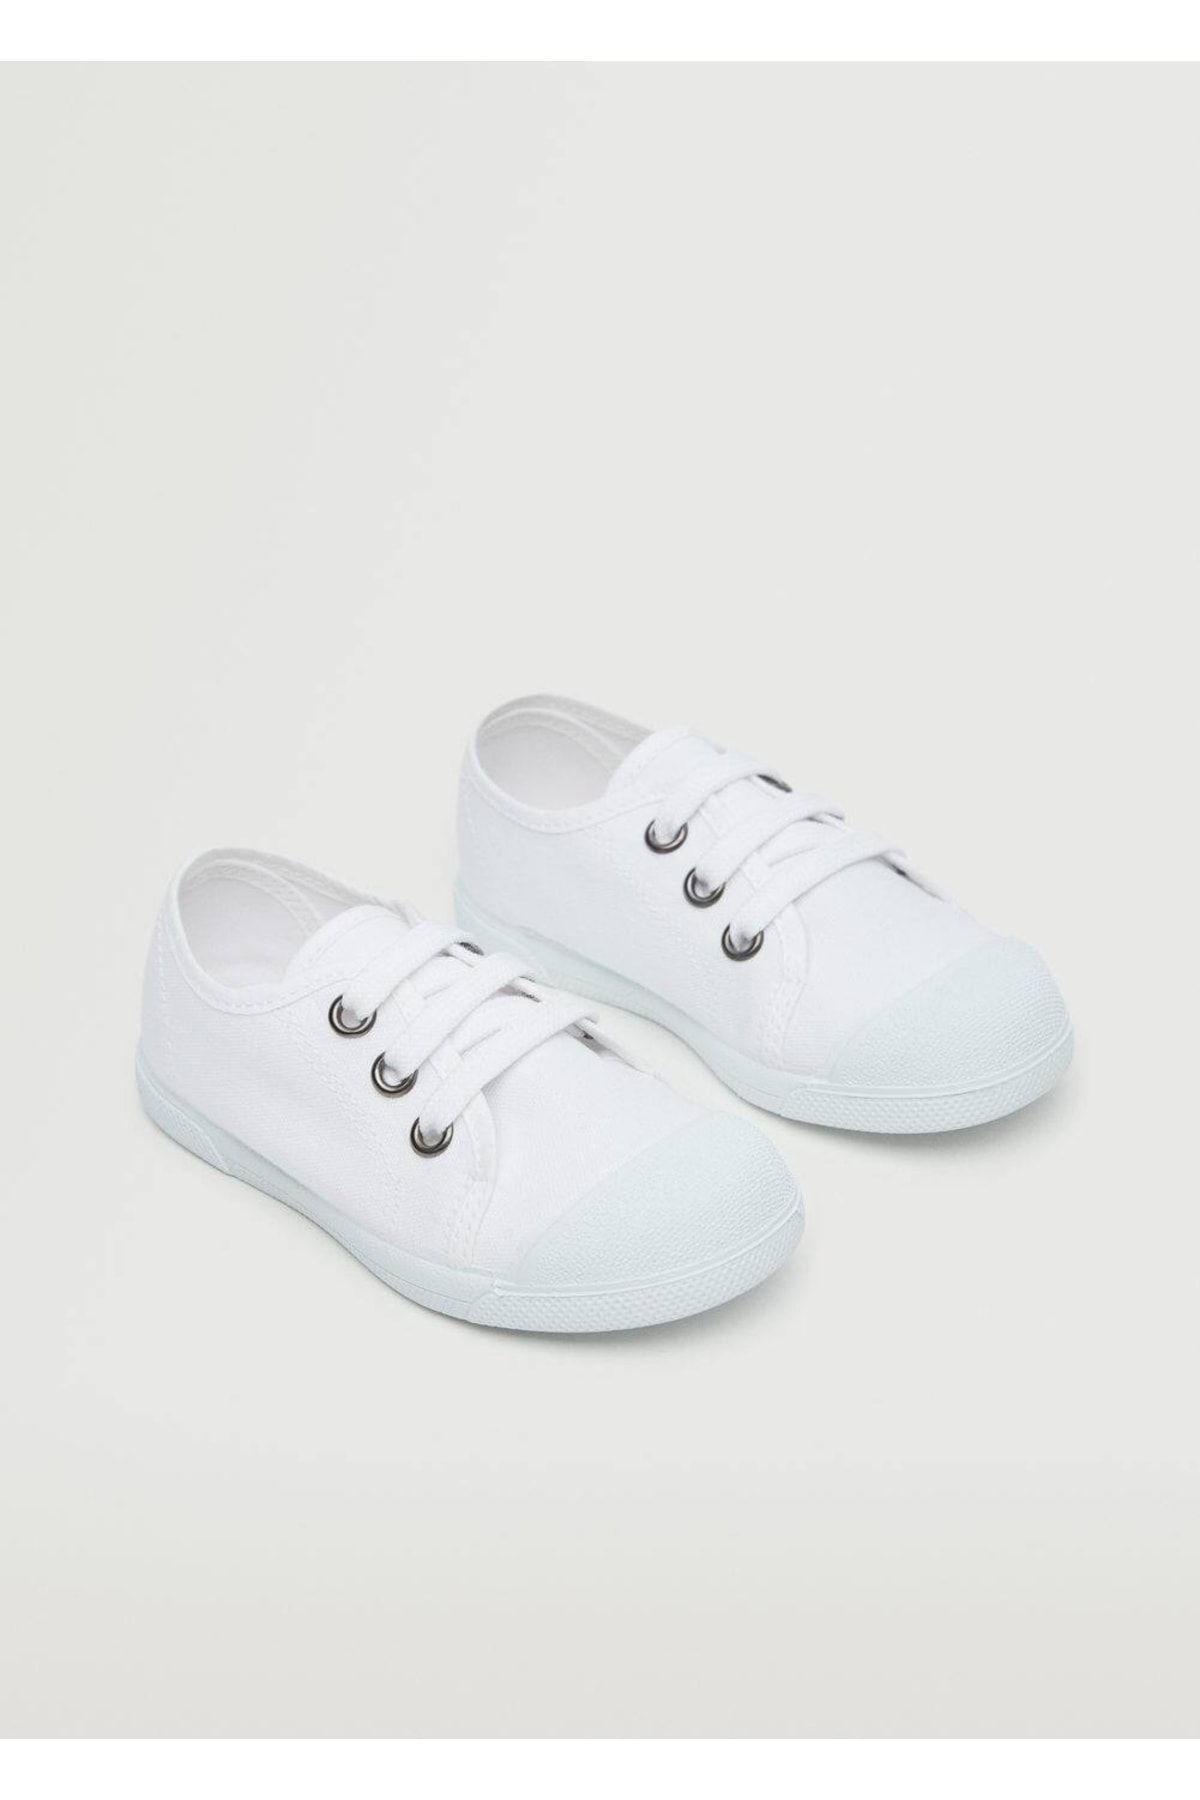 MANGO Baby Beyaz Ayakkabı